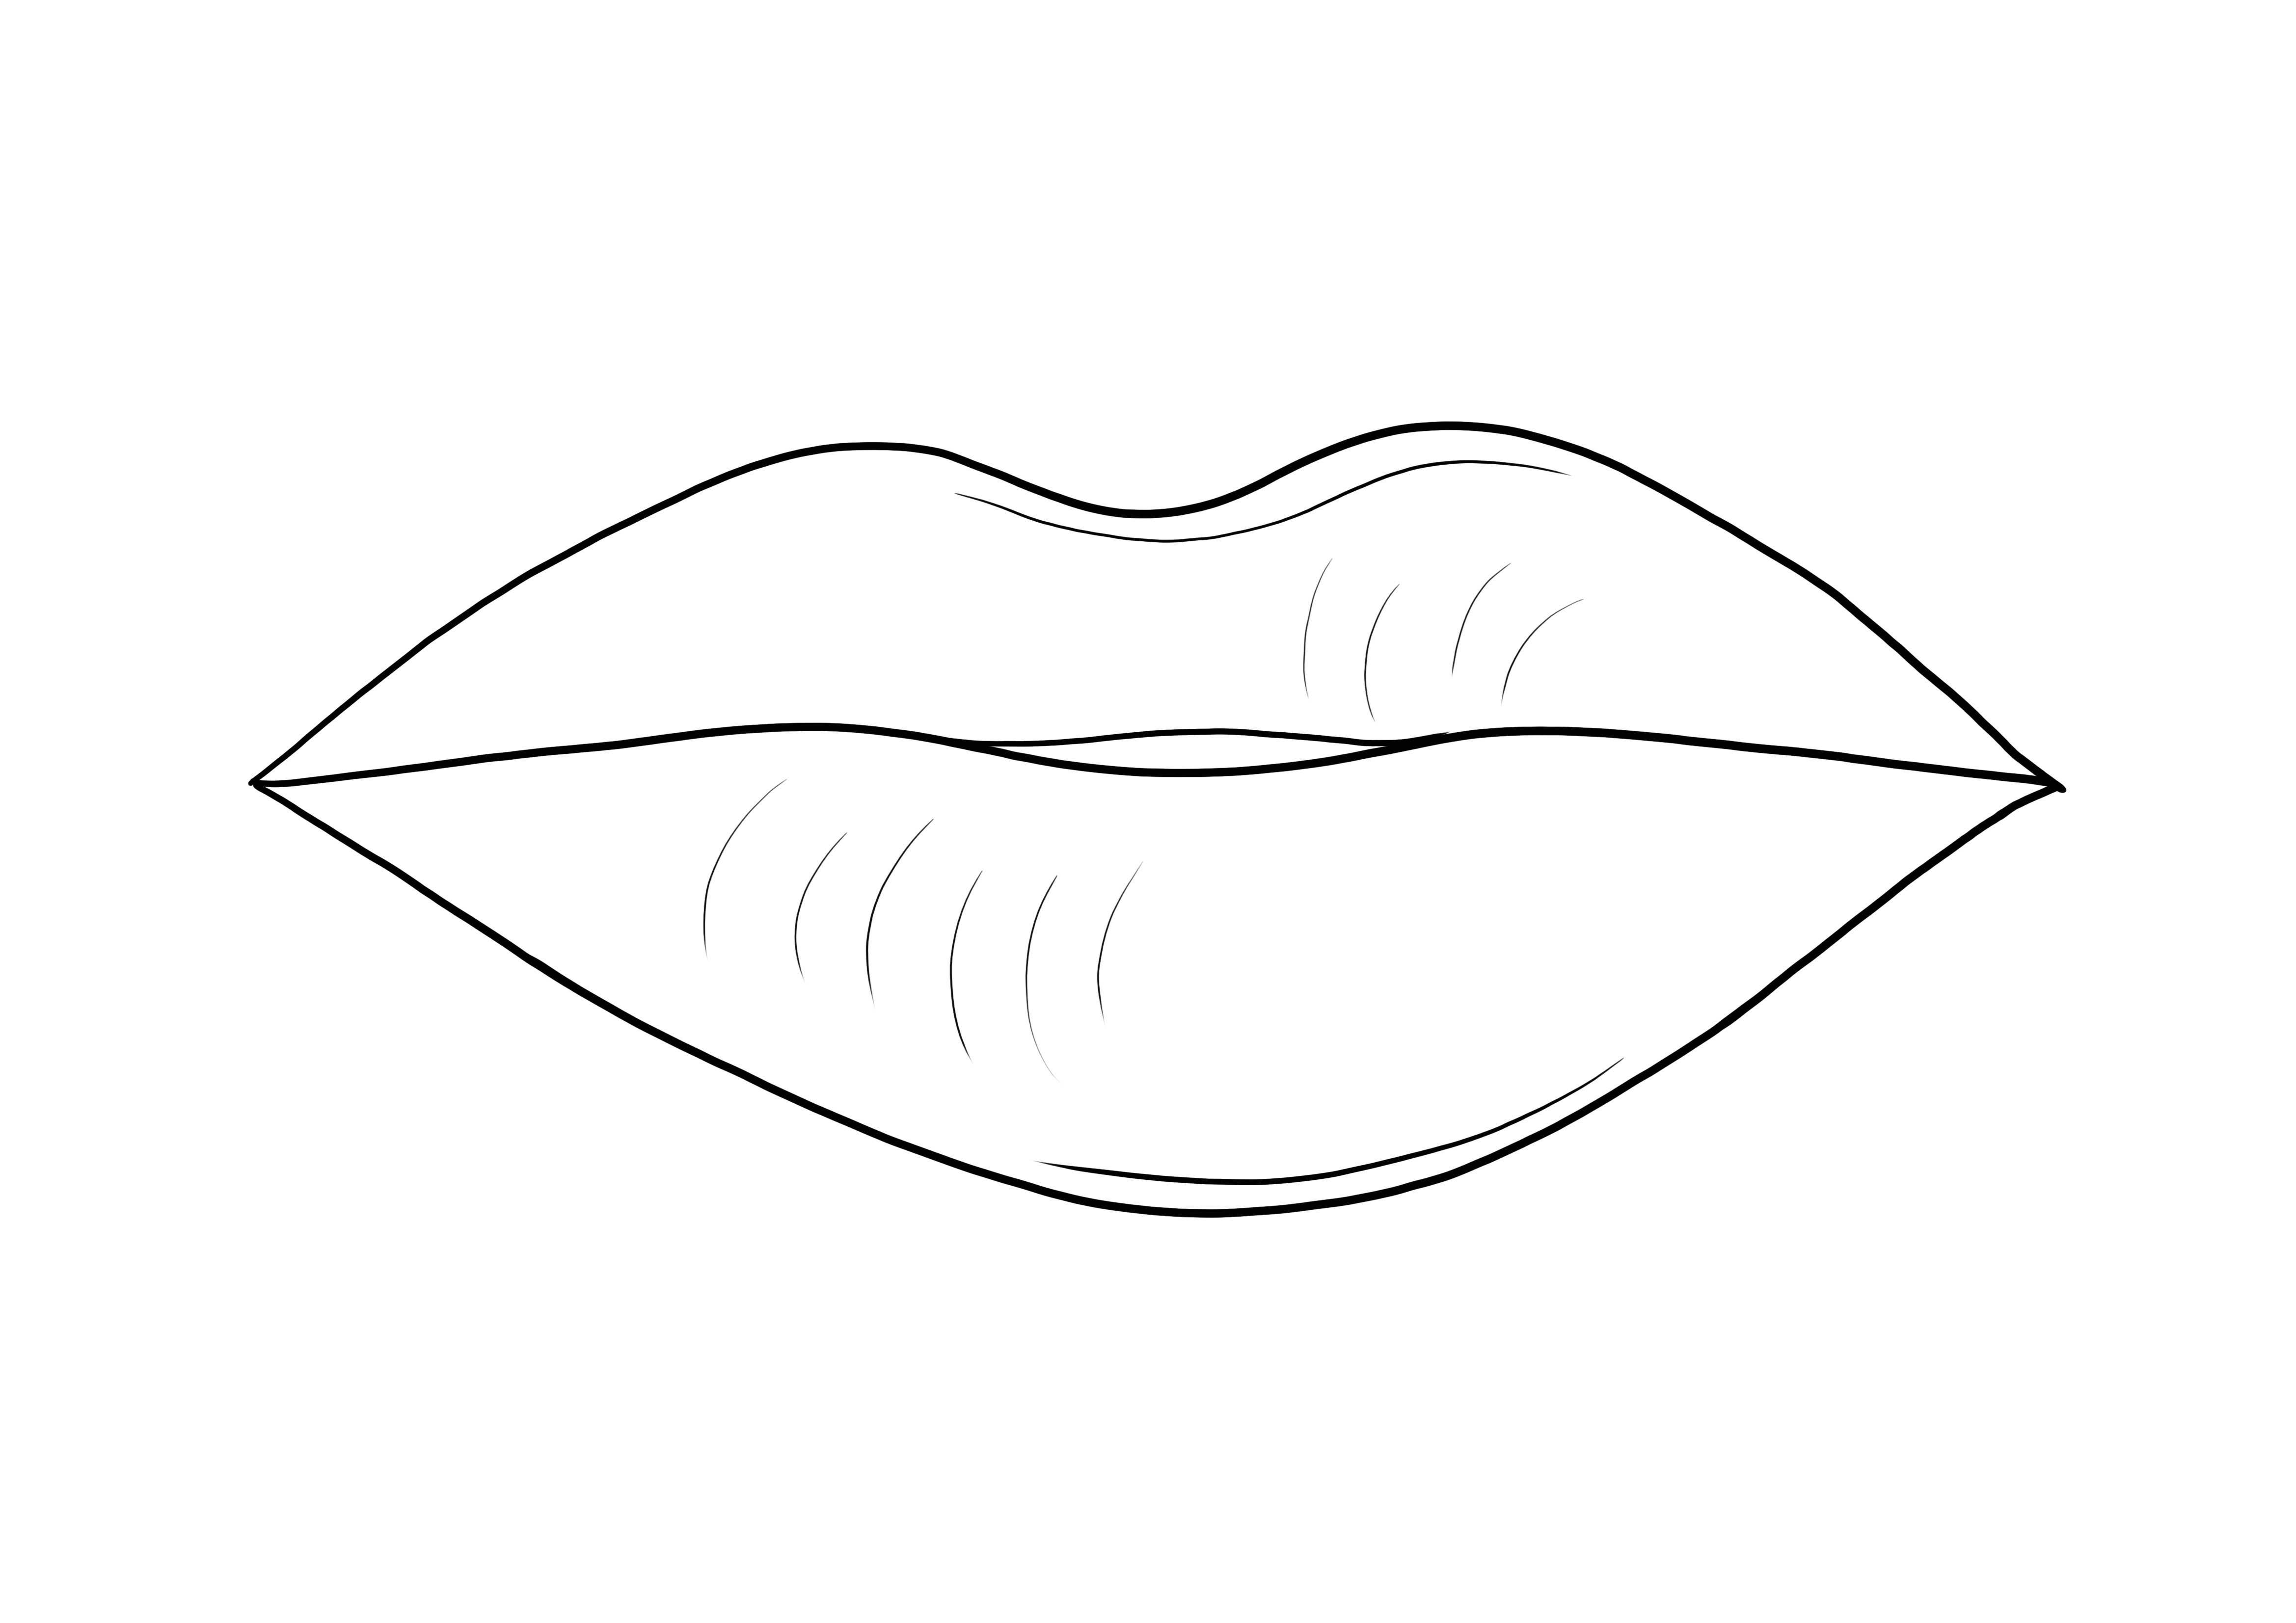 Lembar mewarnai Bibir yang dapat dicetak gratis sebagai bagian dari tubuh manusia untuk diwarnai